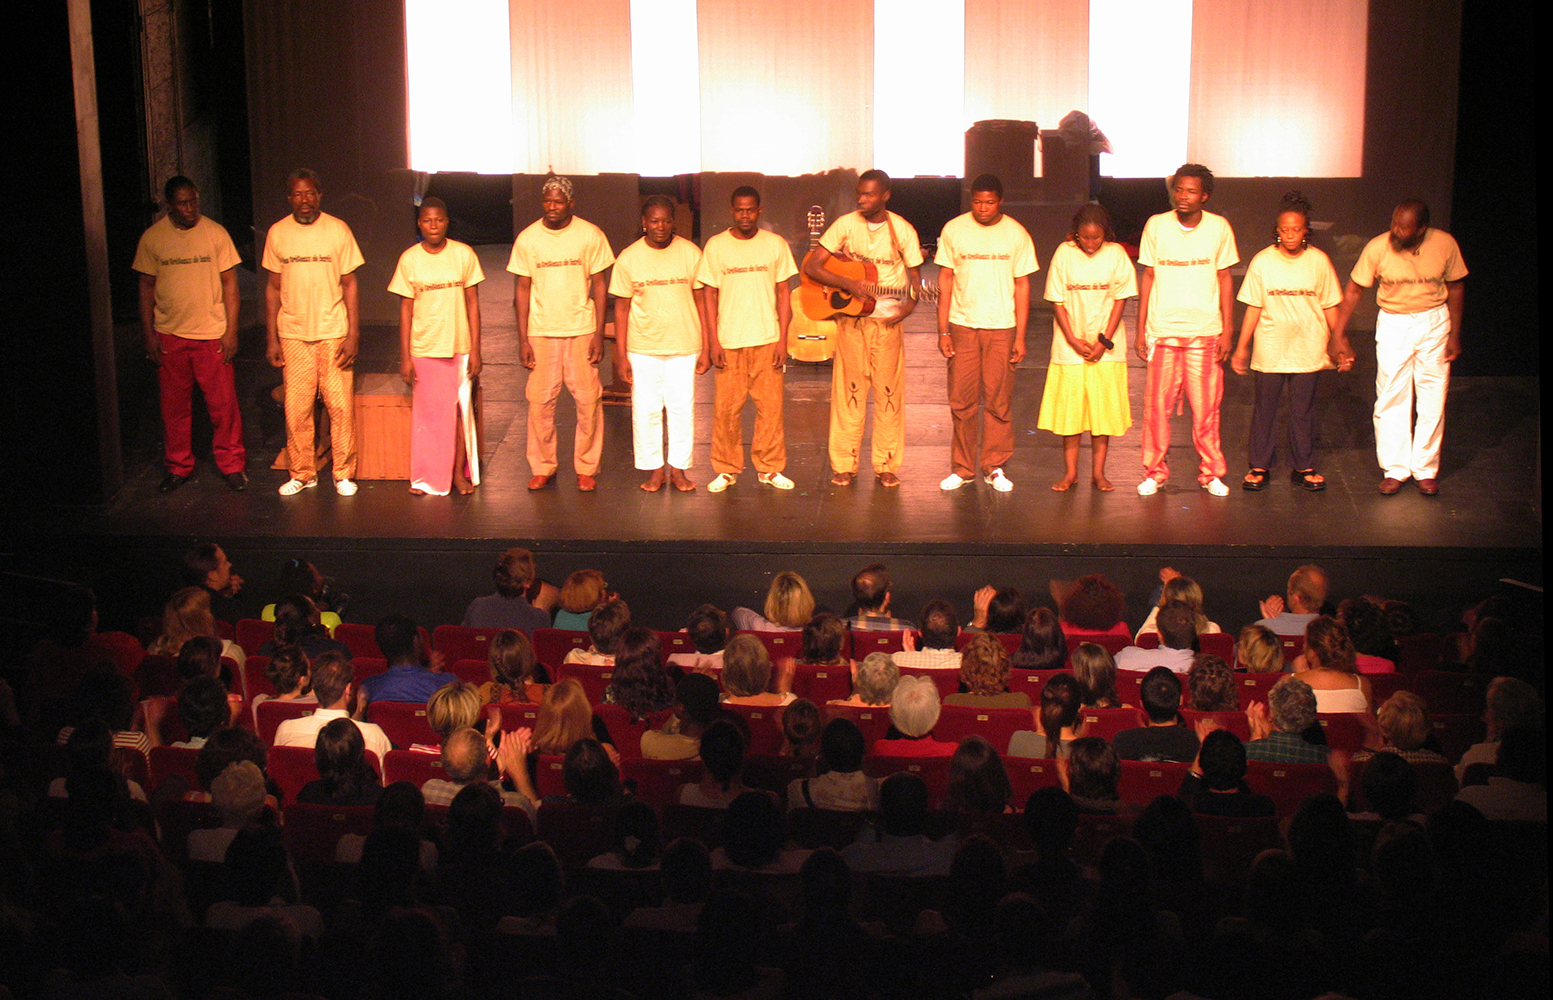 10 juillet 2005 "Ndo Kela" de Koulsy Lamko au théâtre du Vieux Colombier, Paris. Mise en scène de Rodrigue Norman.